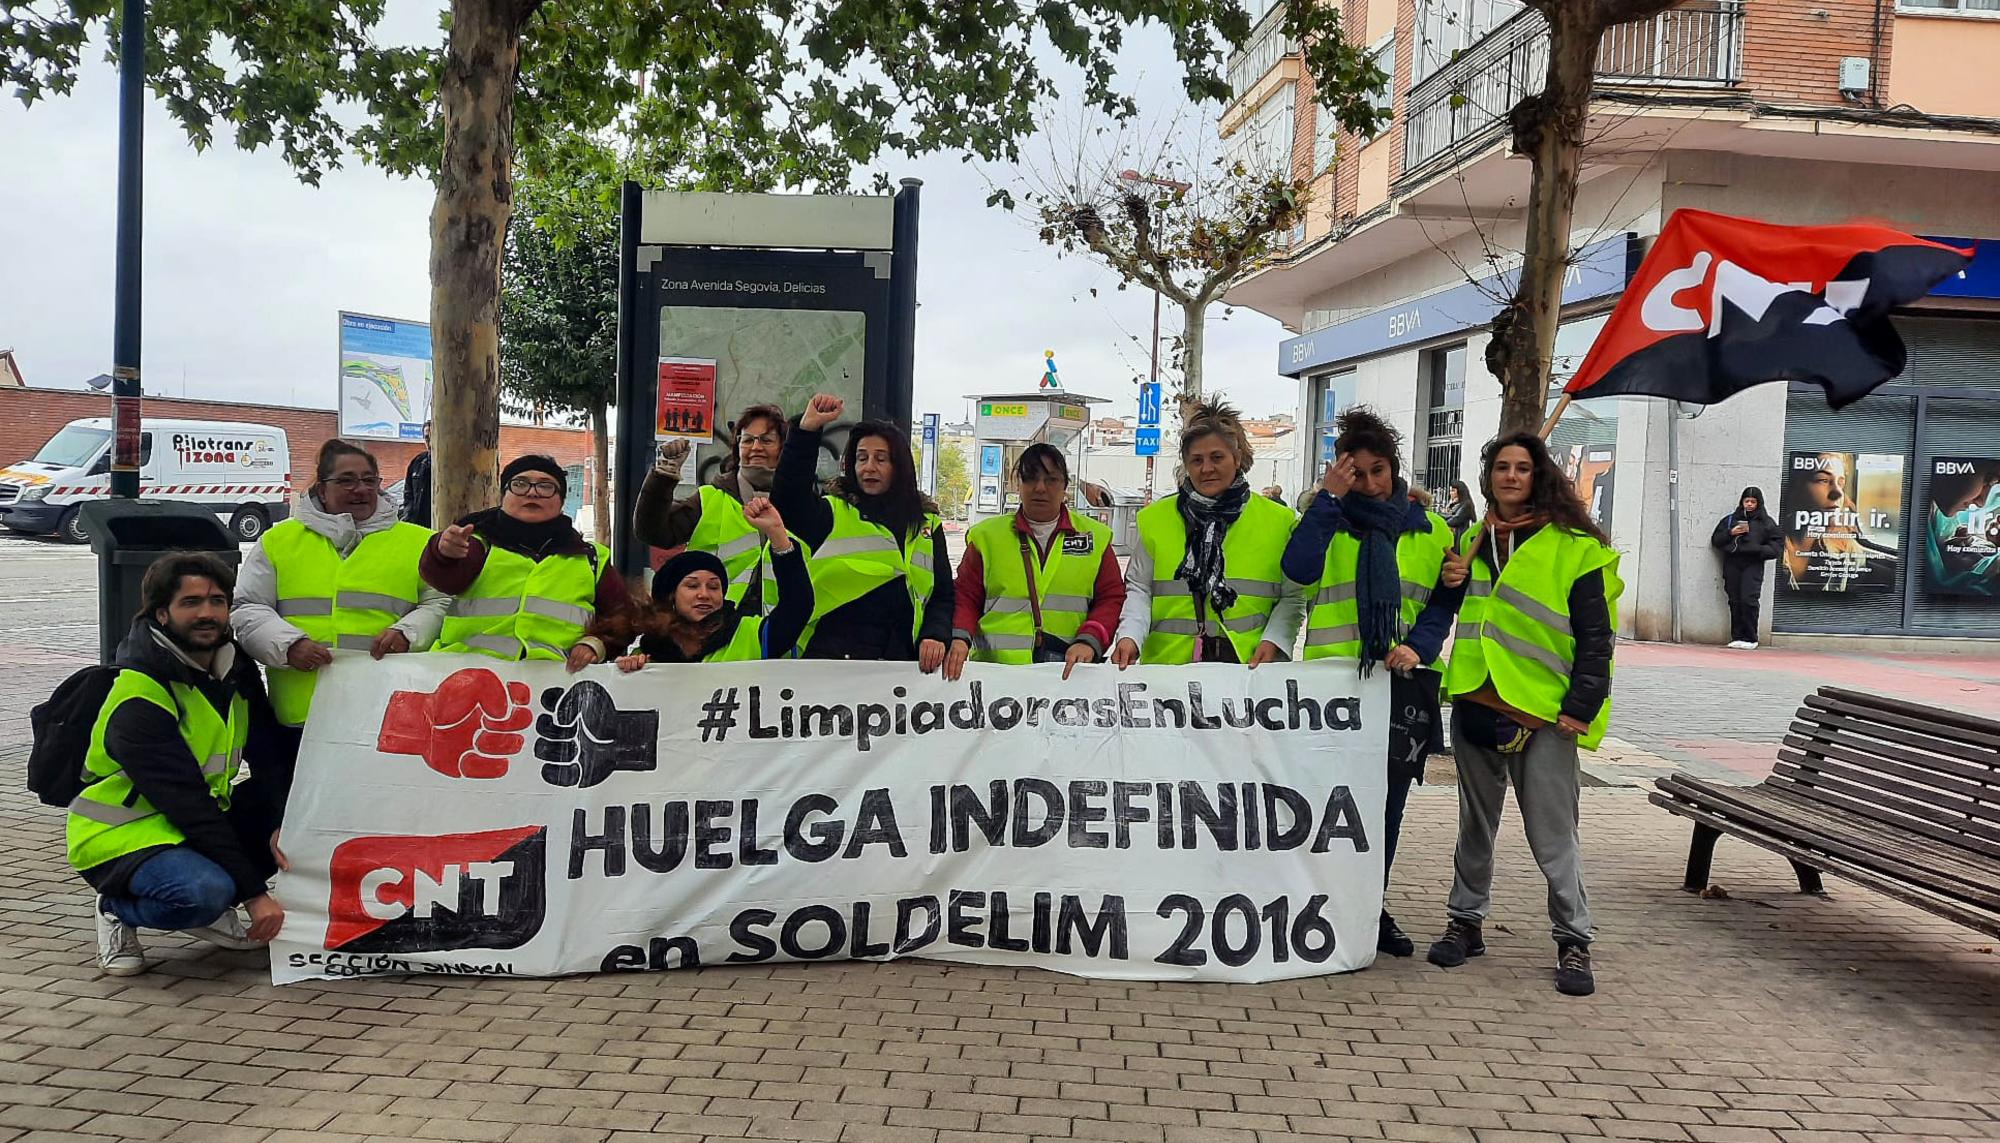 Huelga limpiadoras Valladolid